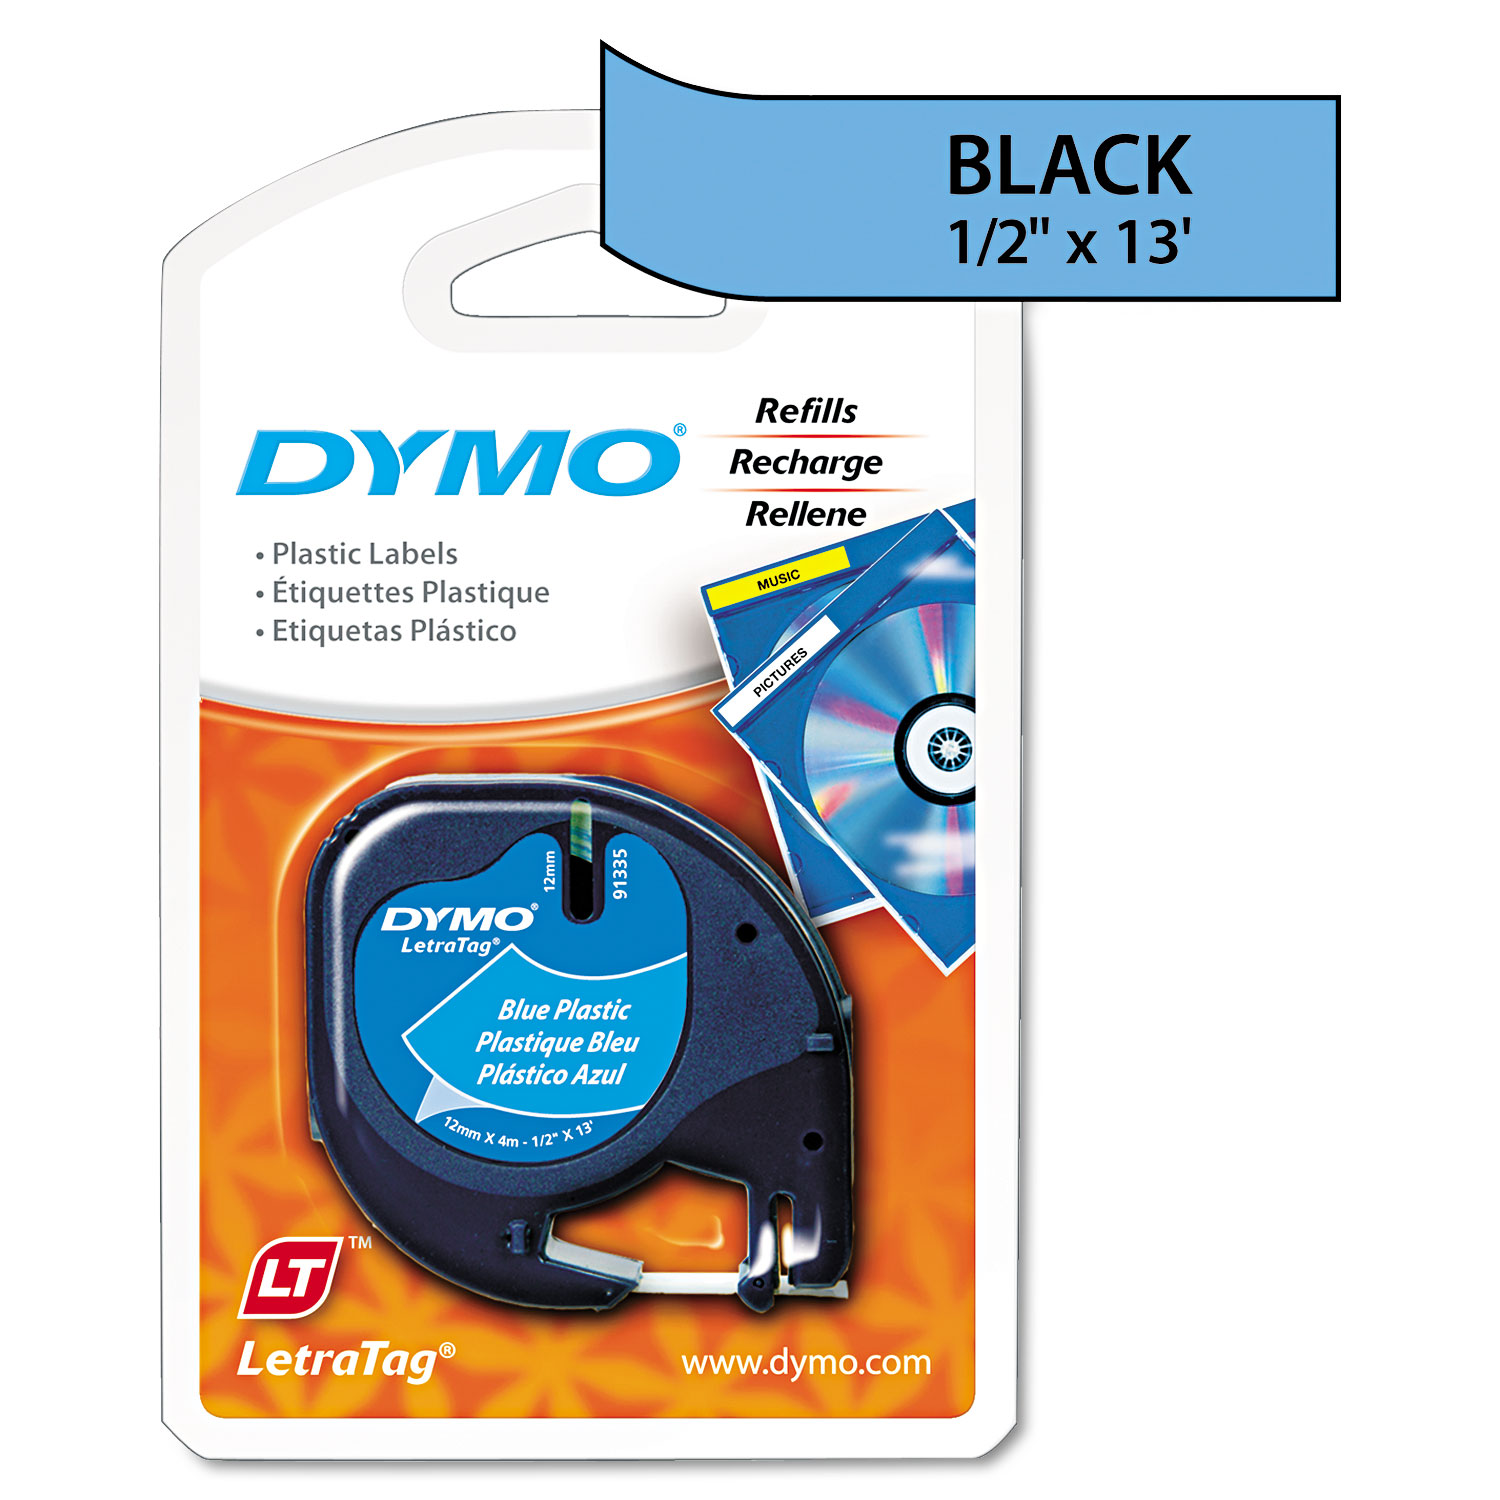  DYMO 91335 LetraTag Plastic Label Tape Cassette, 0.5 x 13 ft, Blue (DYM91335) 